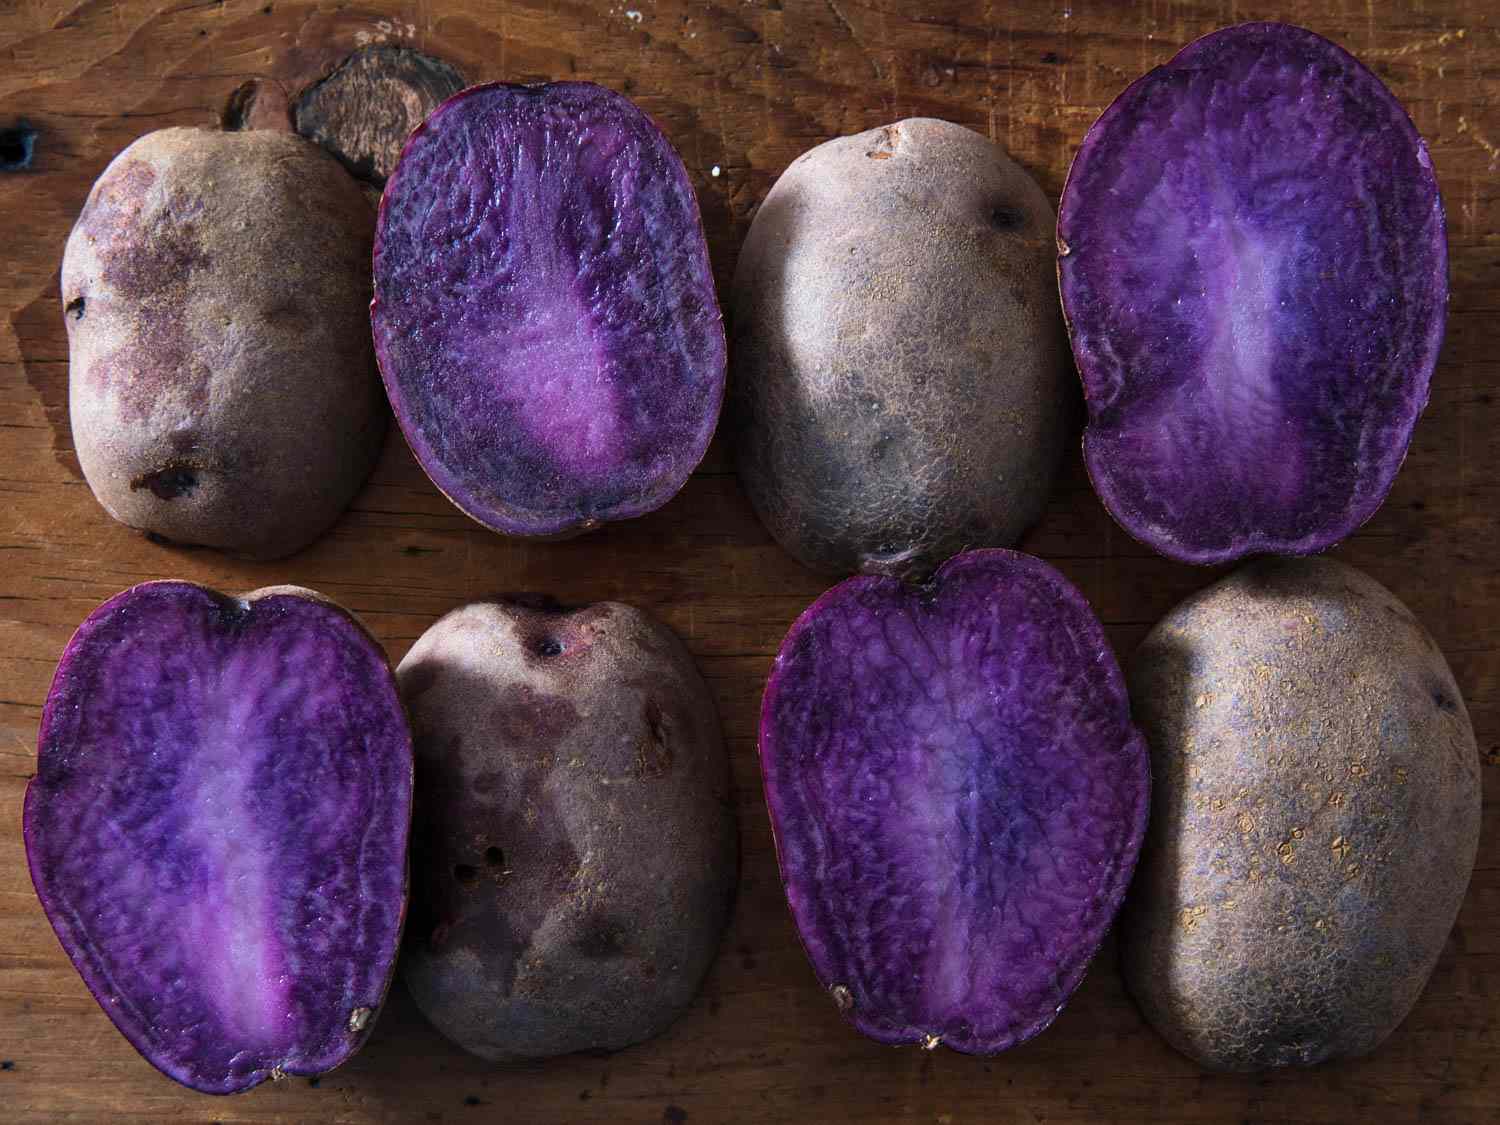 20171031 -马铃薯品种vicky -沃斯克-紫- 3. - jpg